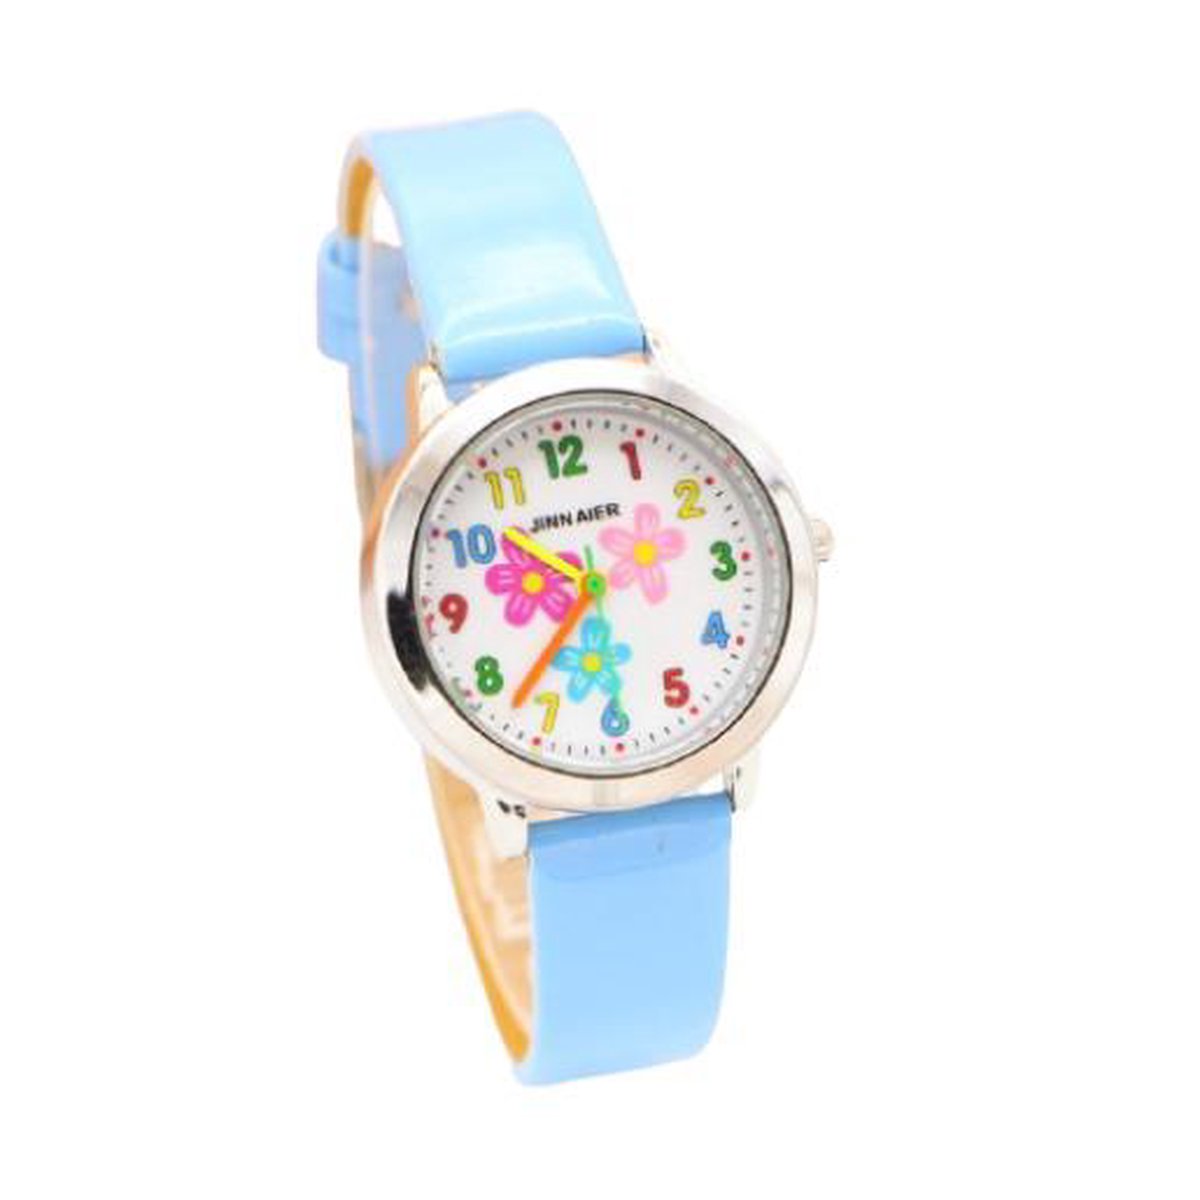 Meisjes horloge lichtblauw met bloem afbeelding en leer bandje.